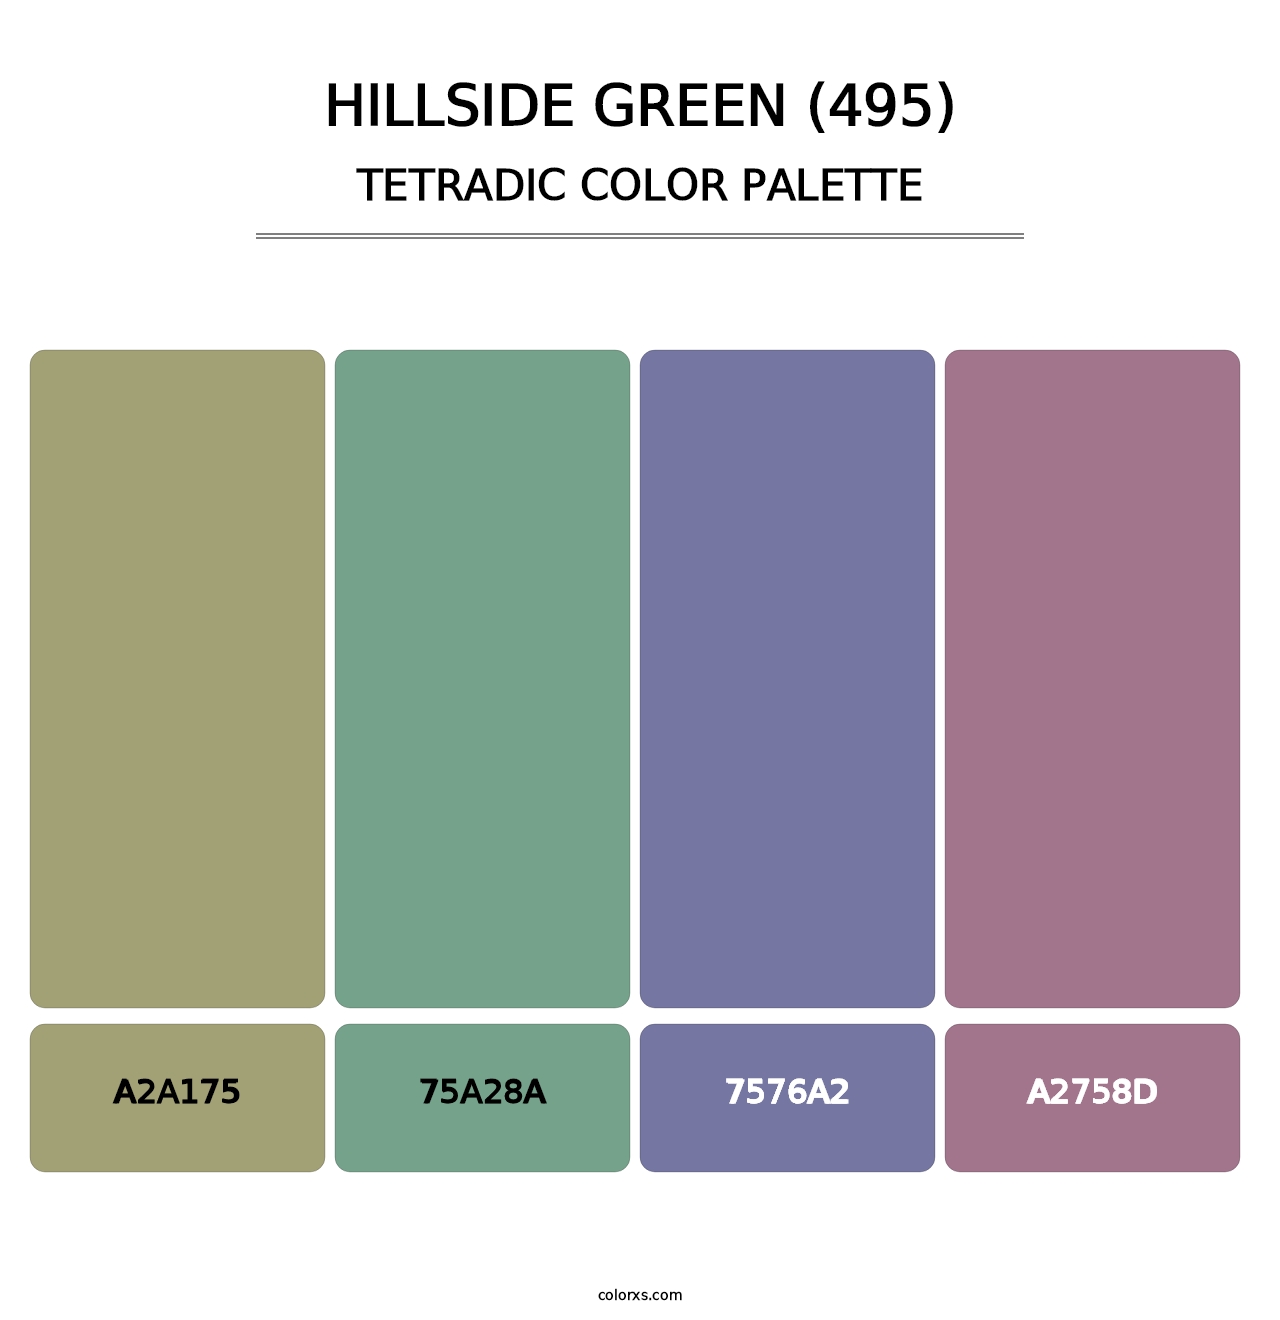 Hillside Green (495) - Tetradic Color Palette